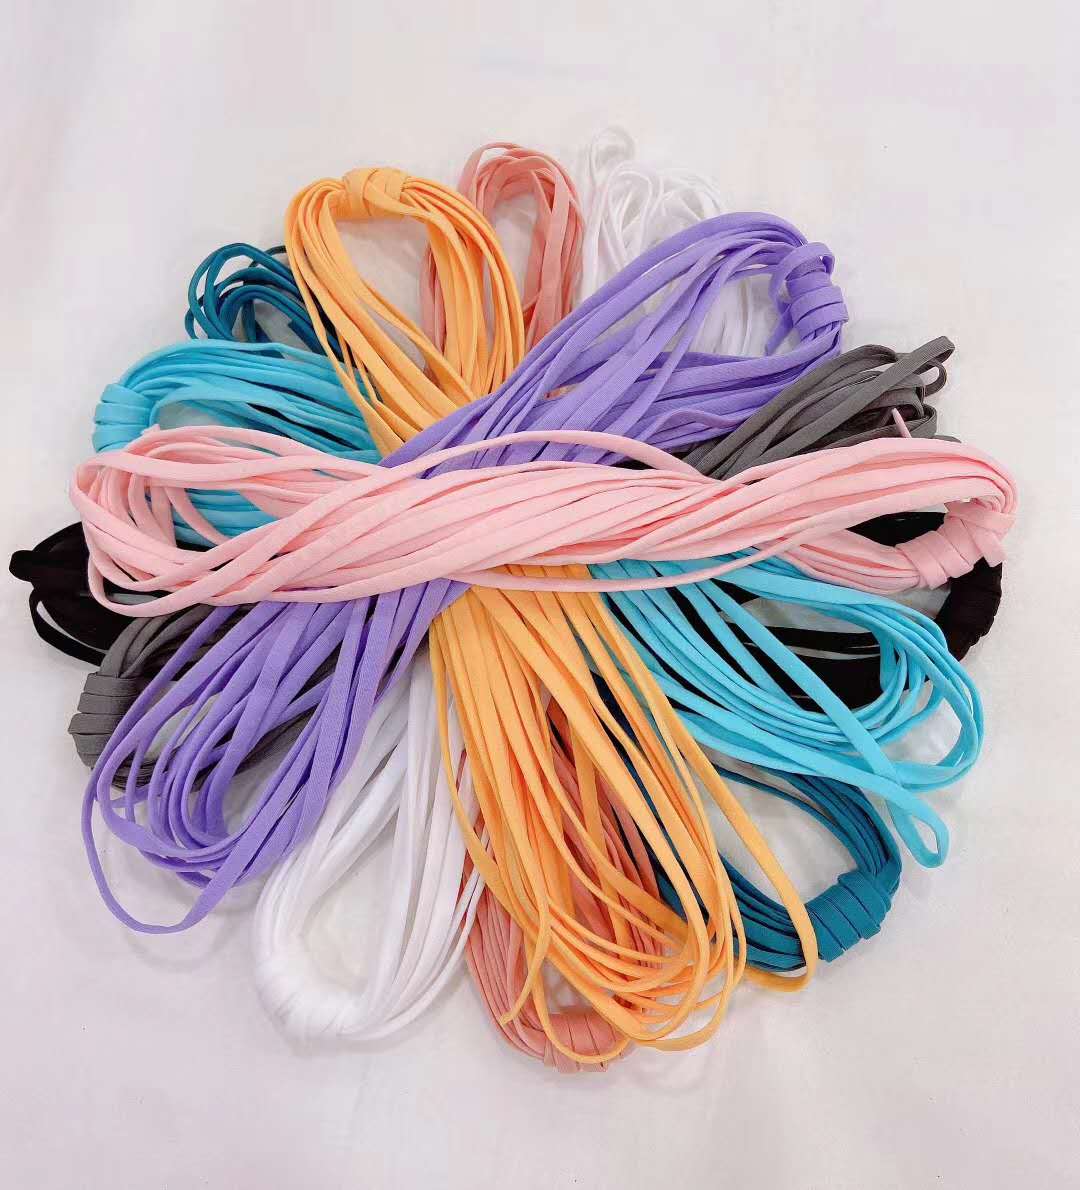 色條紋尼龍織帶,口罩耳帶繩,七彩織帶,印刷織帶,松緊帶,花邊帶,繩類織帶,編織帶,特殊織帶